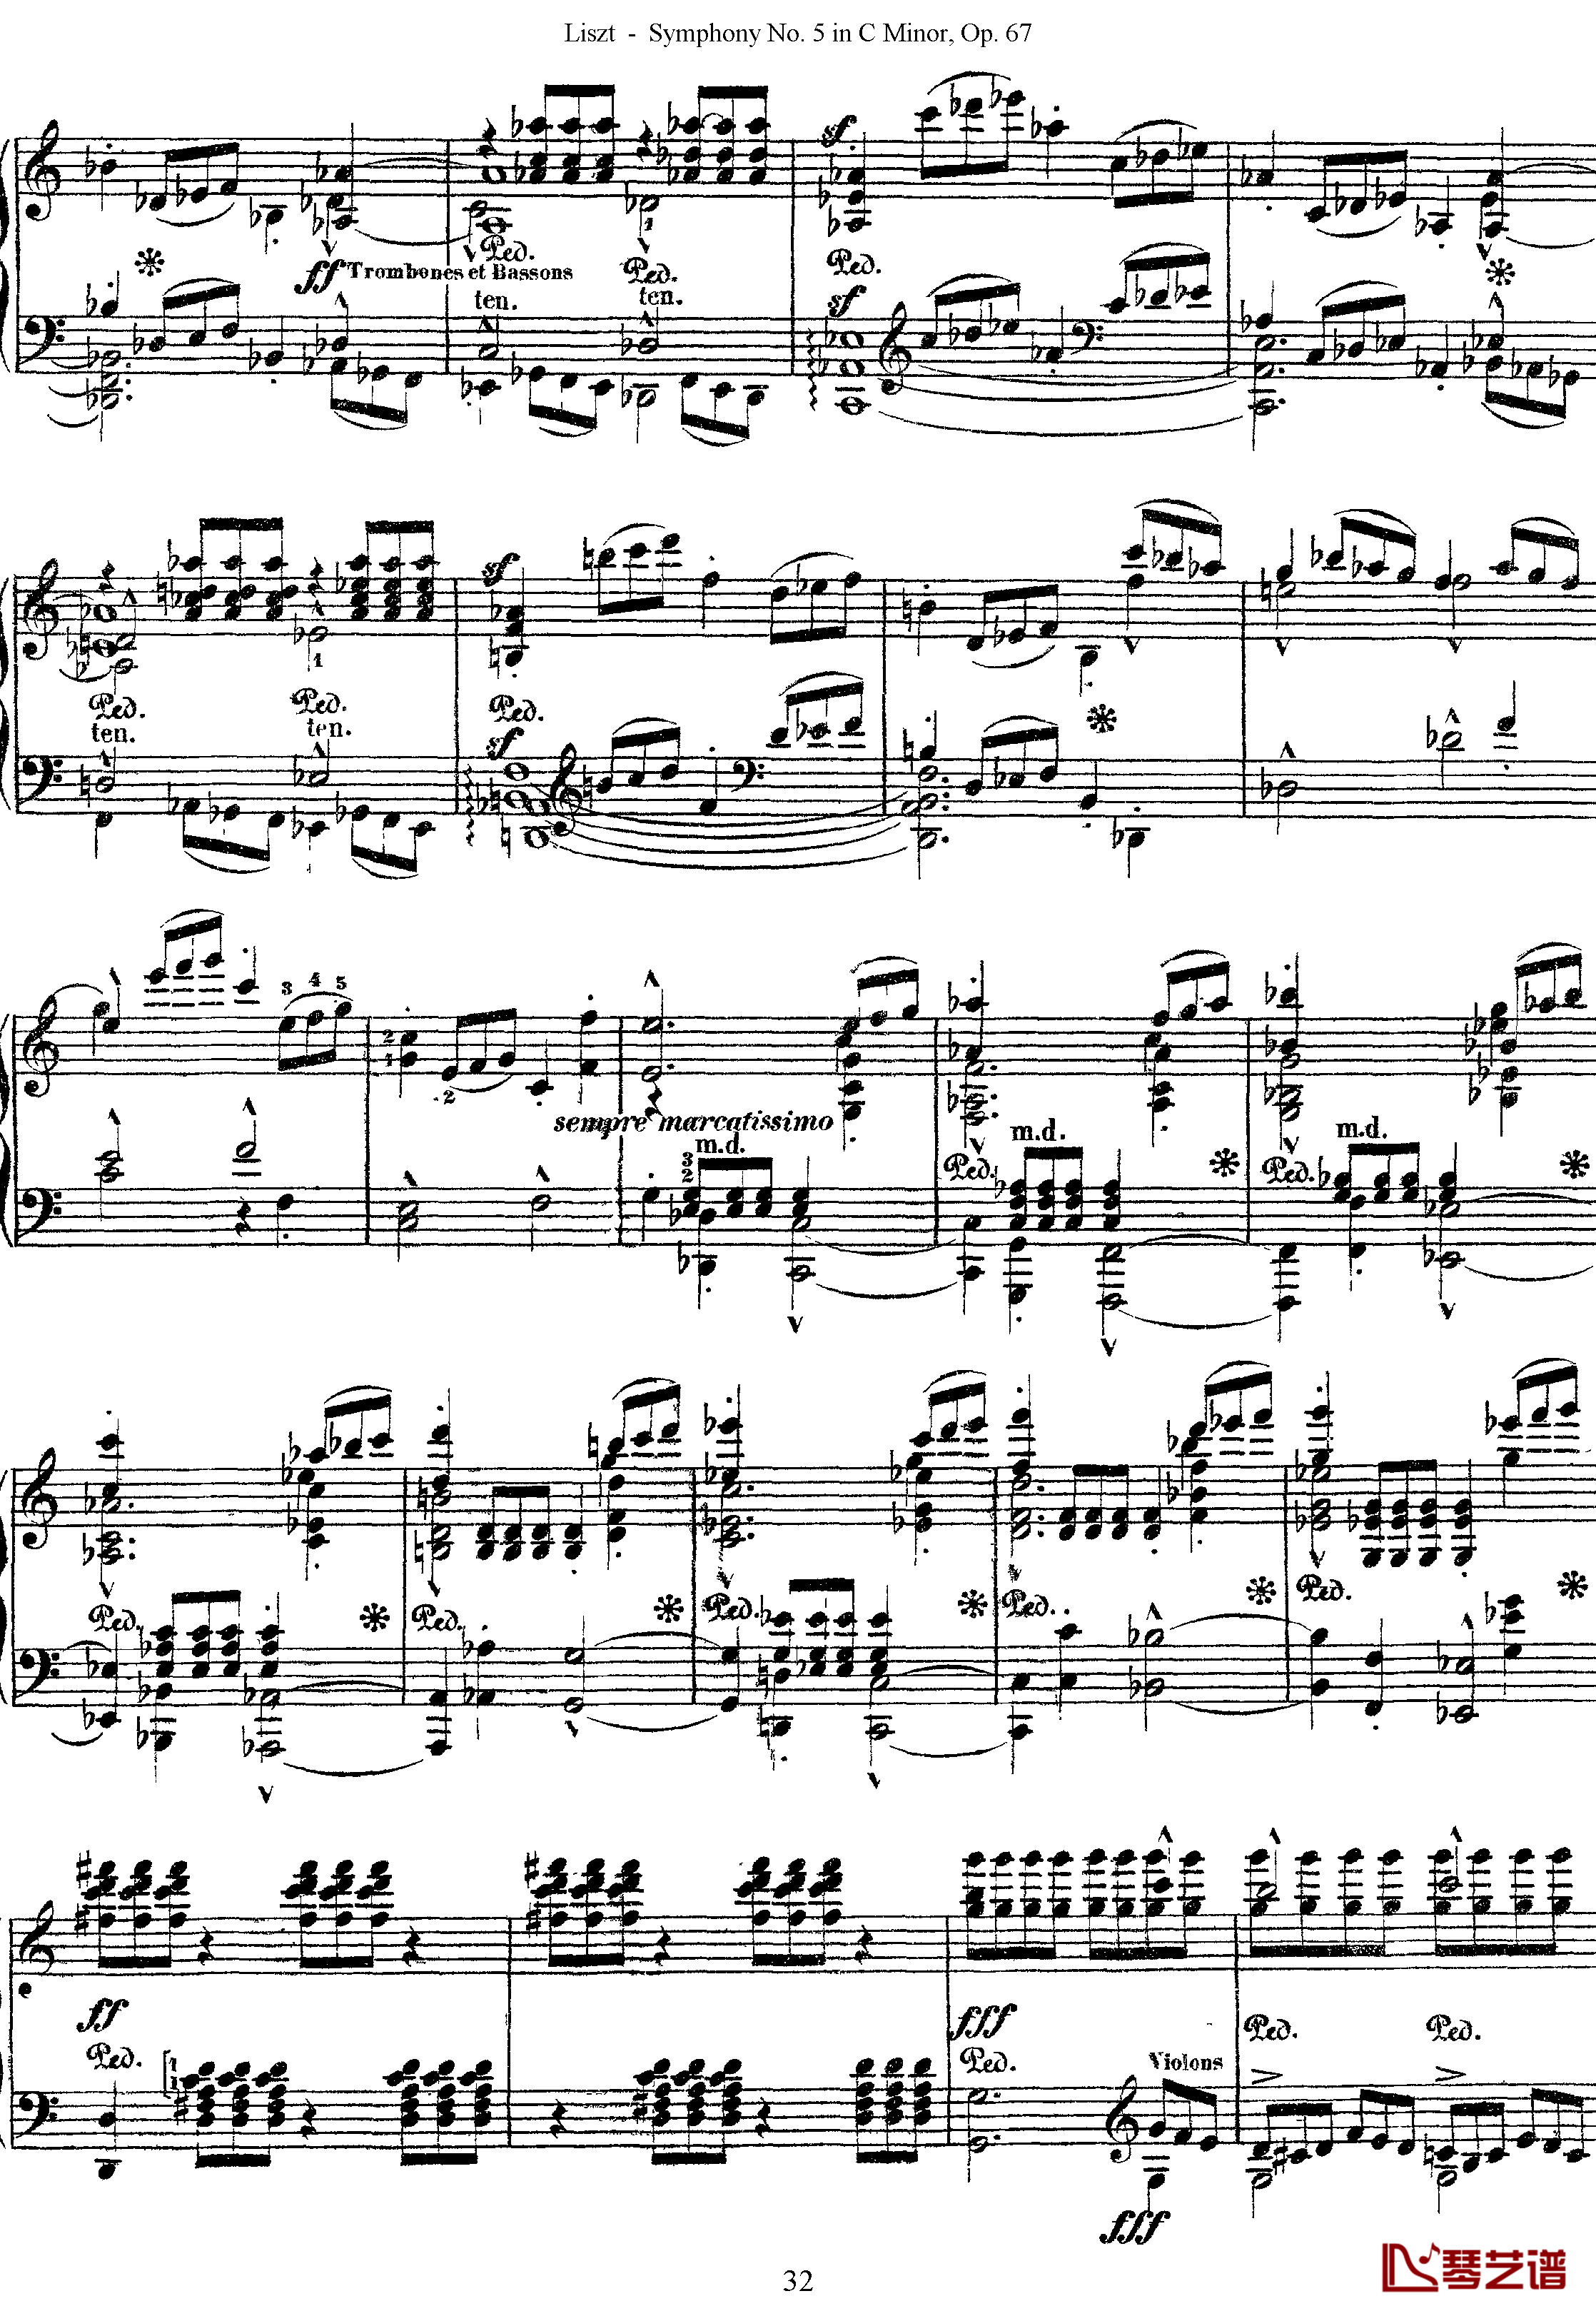 第五交响乐的钢琴曲钢琴谱-李斯特-李斯特改编自贝多芬32